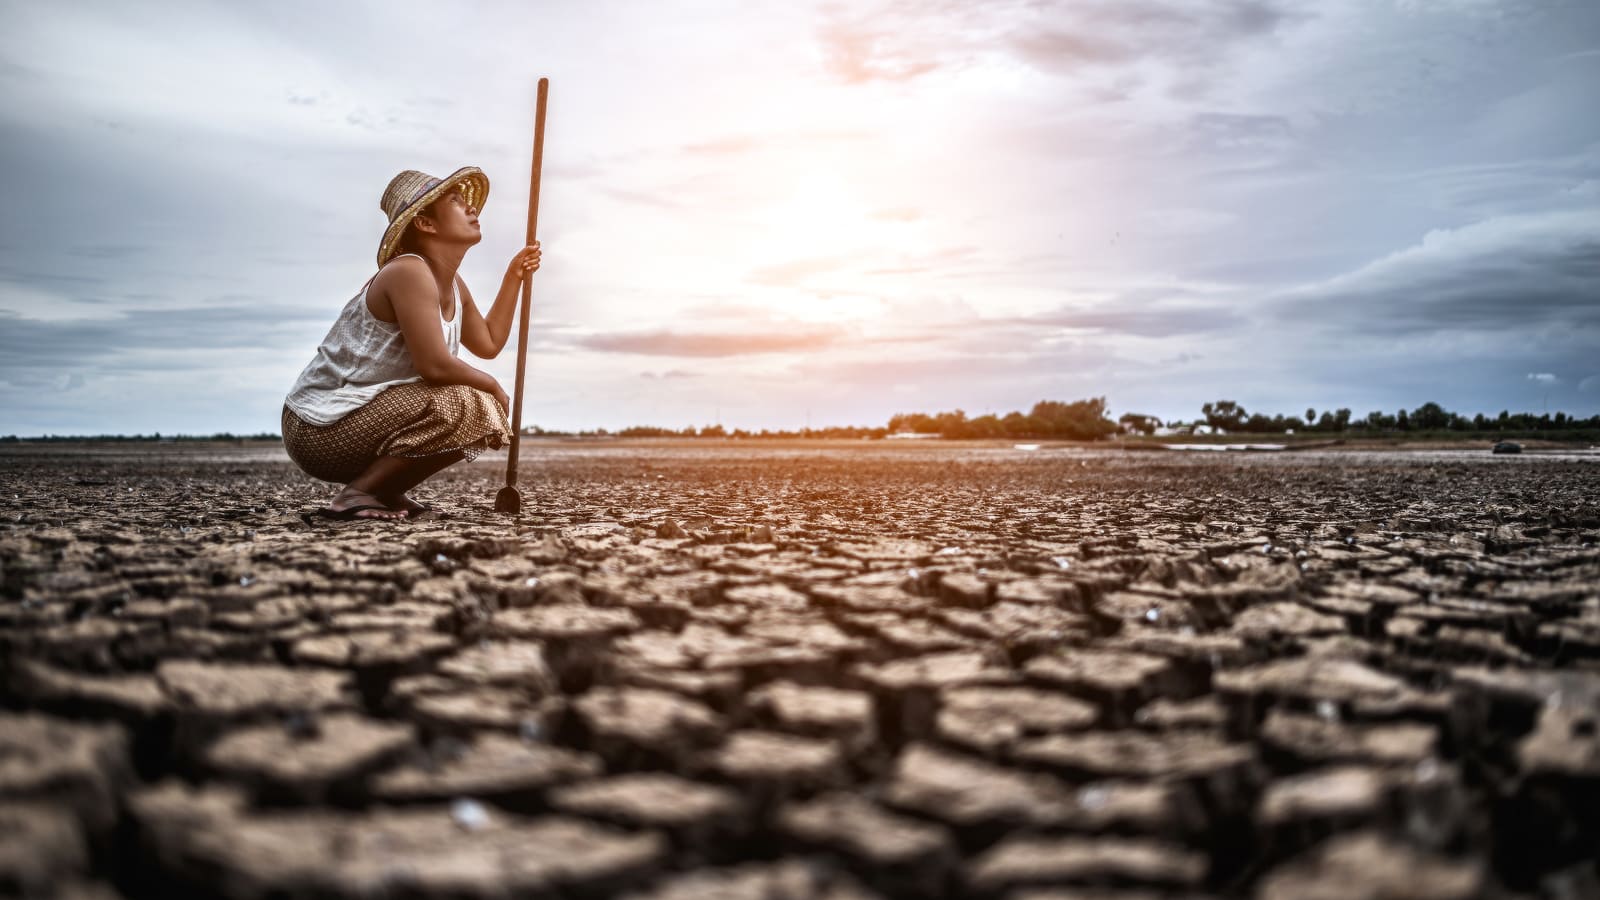 Foto em ambiente externo mostra uma pessoa sentada de cócoras em um solo com erosão, retratando as mudanças climáticas e seus impactos na saúde. A pessoa usa chapéu de palha e olha para o céu.